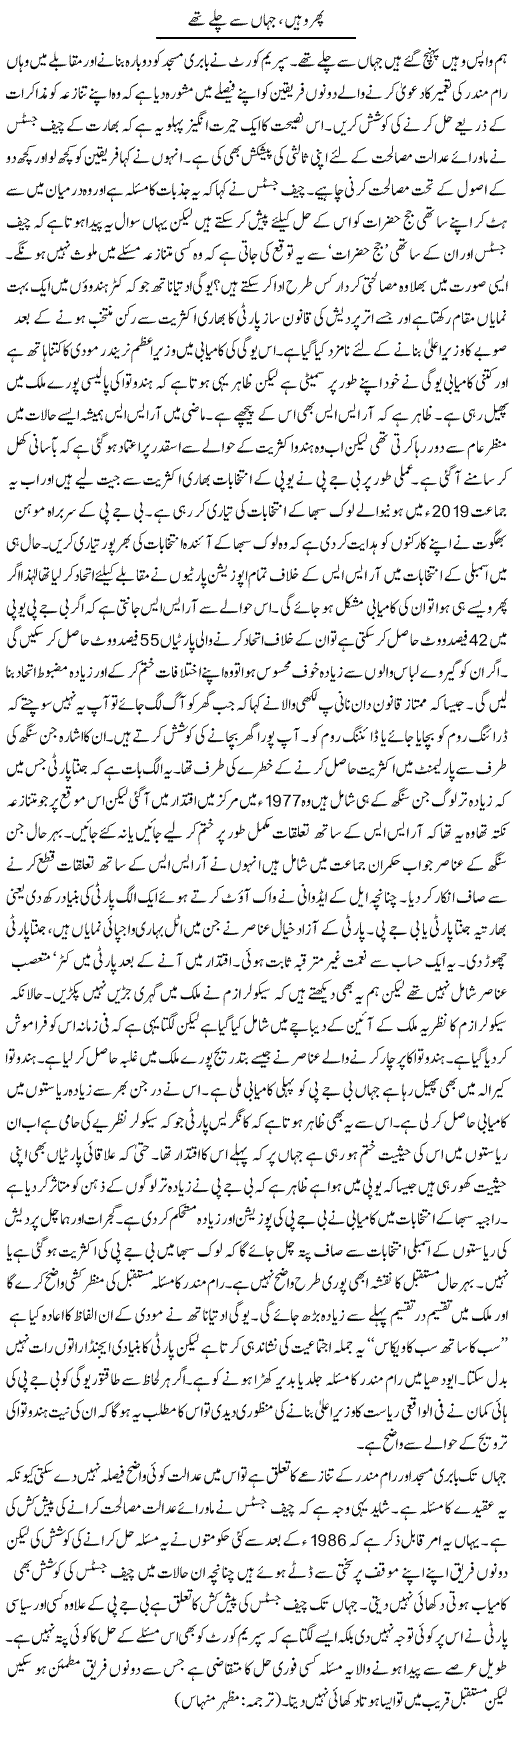 Phir Wahin, Jahan Se Chalay Thay | Kuldip Nayar | Daily Urdu Columns